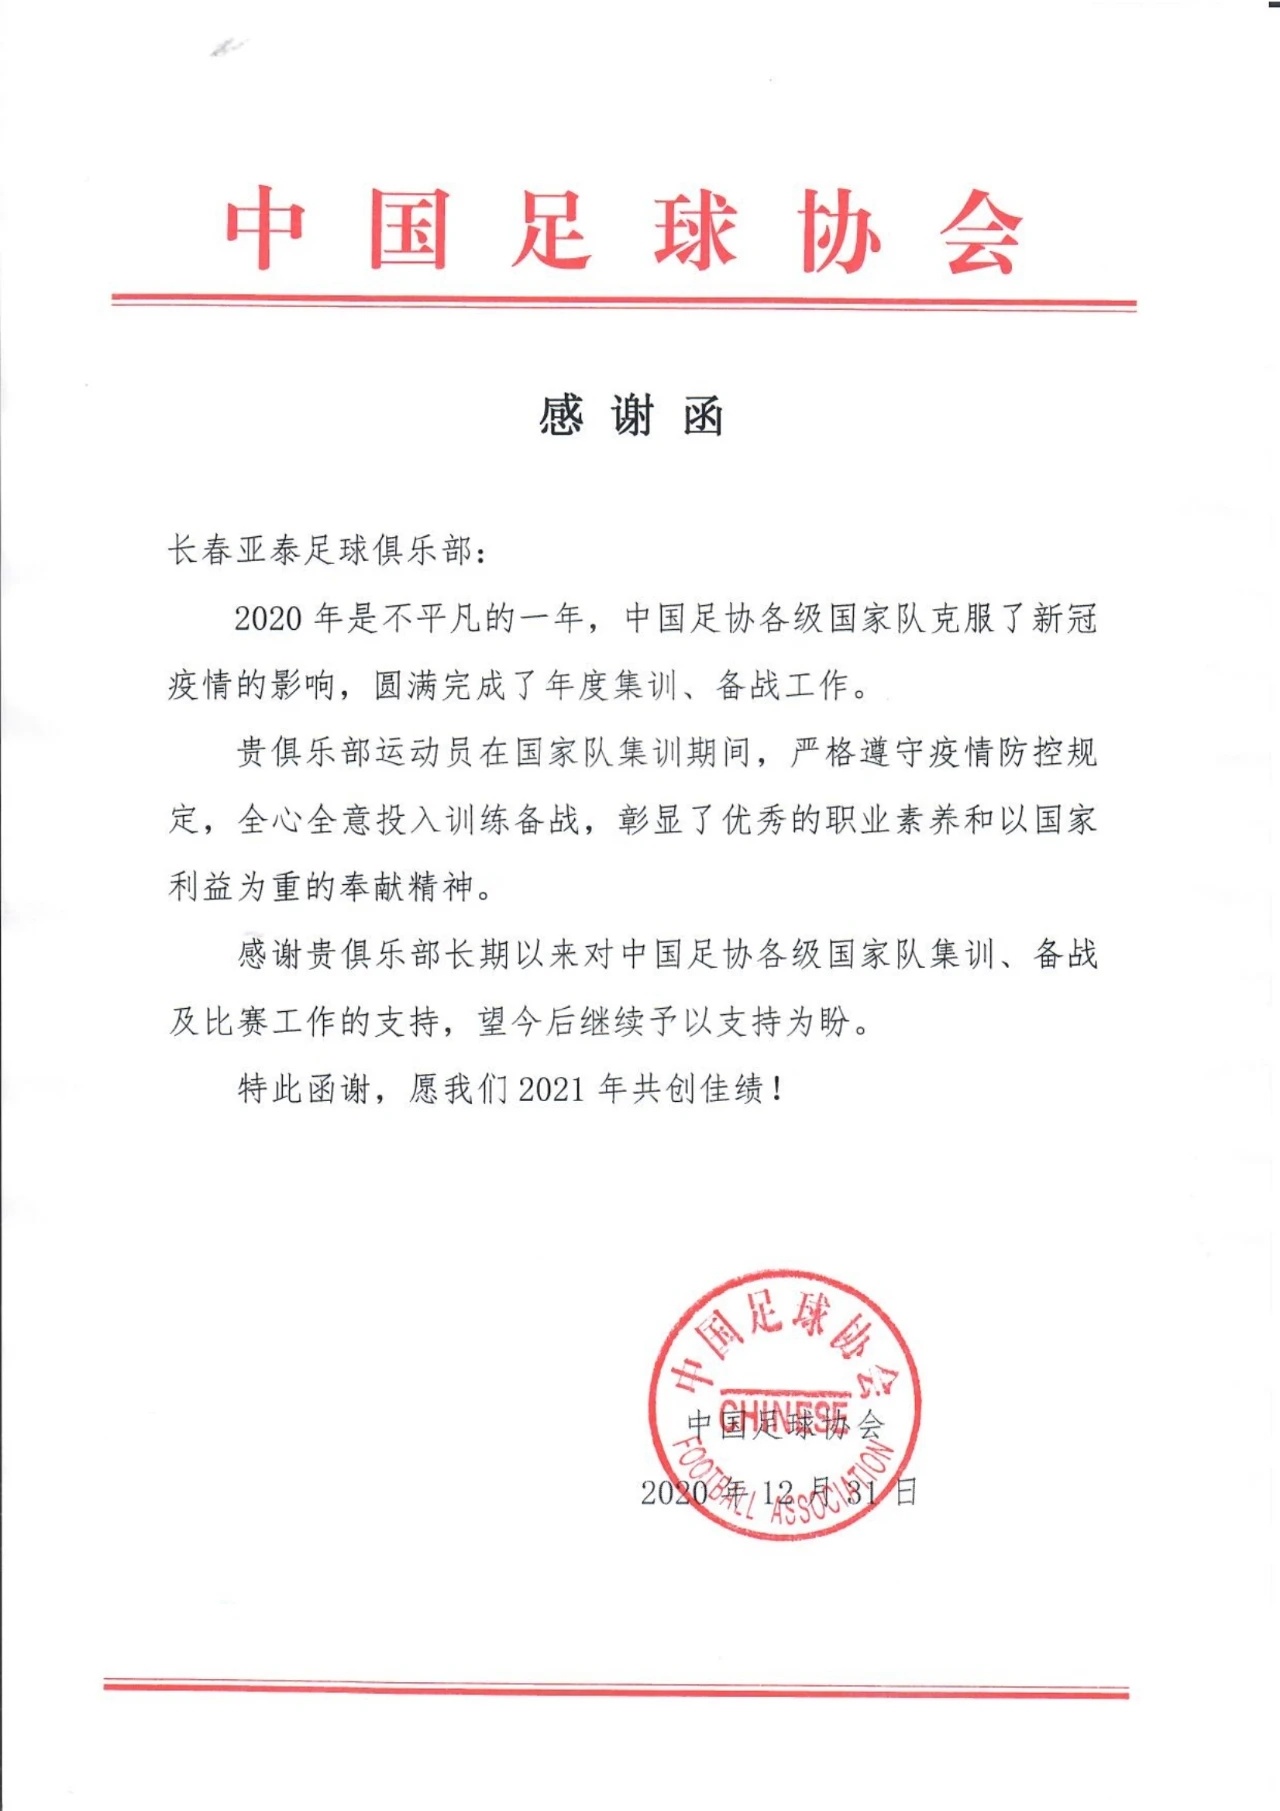 中国足协发函致谢长春亚泰足球俱乐部 感谢亚泰足球俱乐部对各级国家队的支持